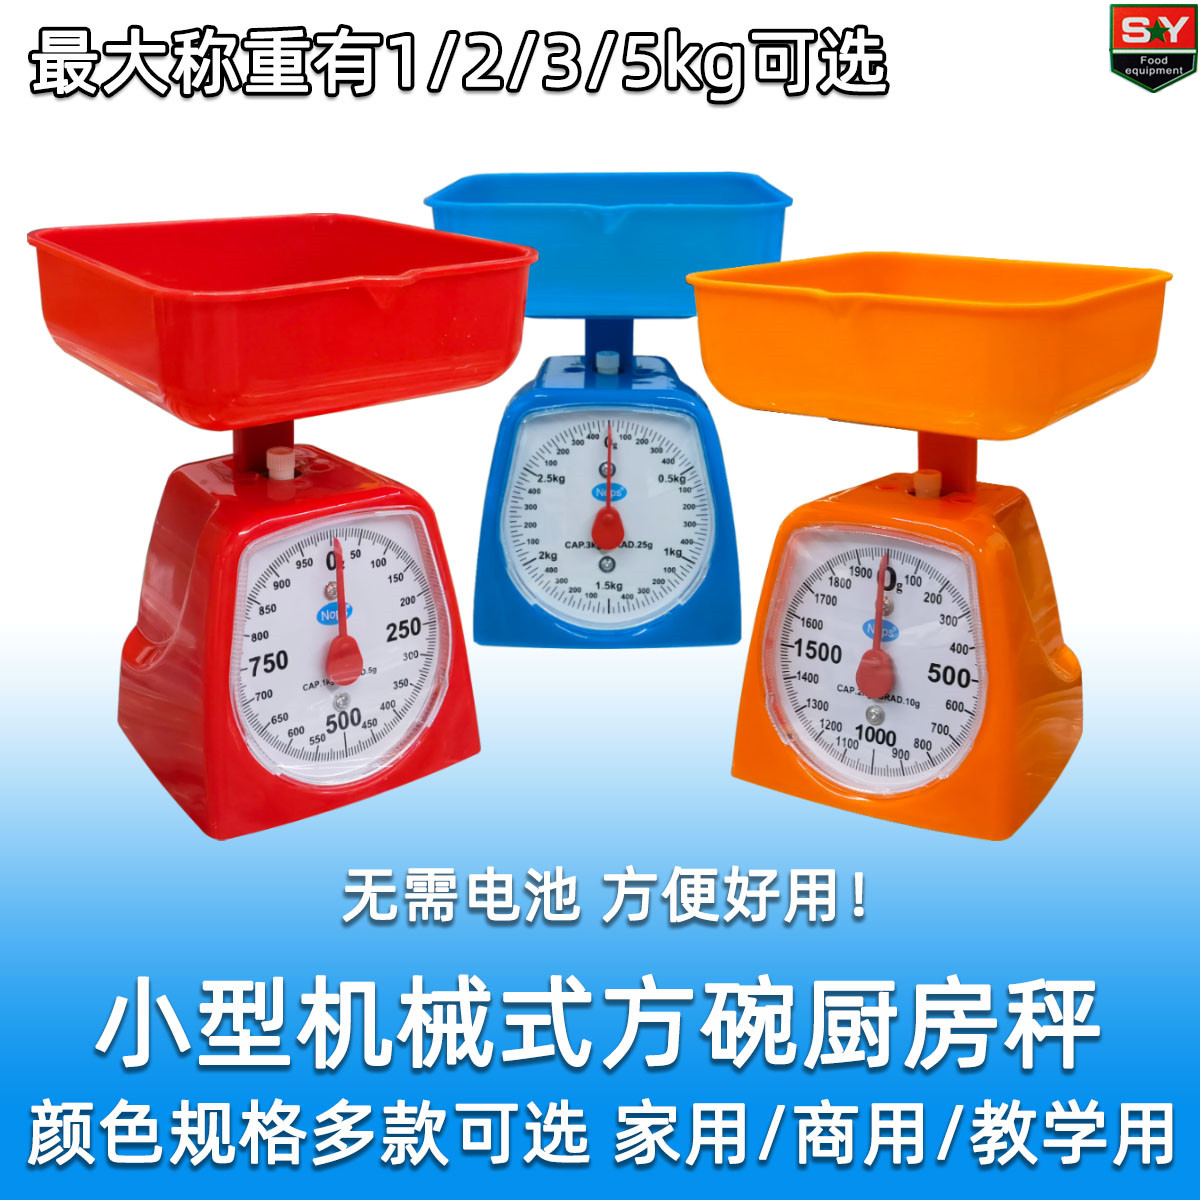 [家用好货] 弹簧式家用厨房秤食品秤学生秤 1到5kg多种量程可选择